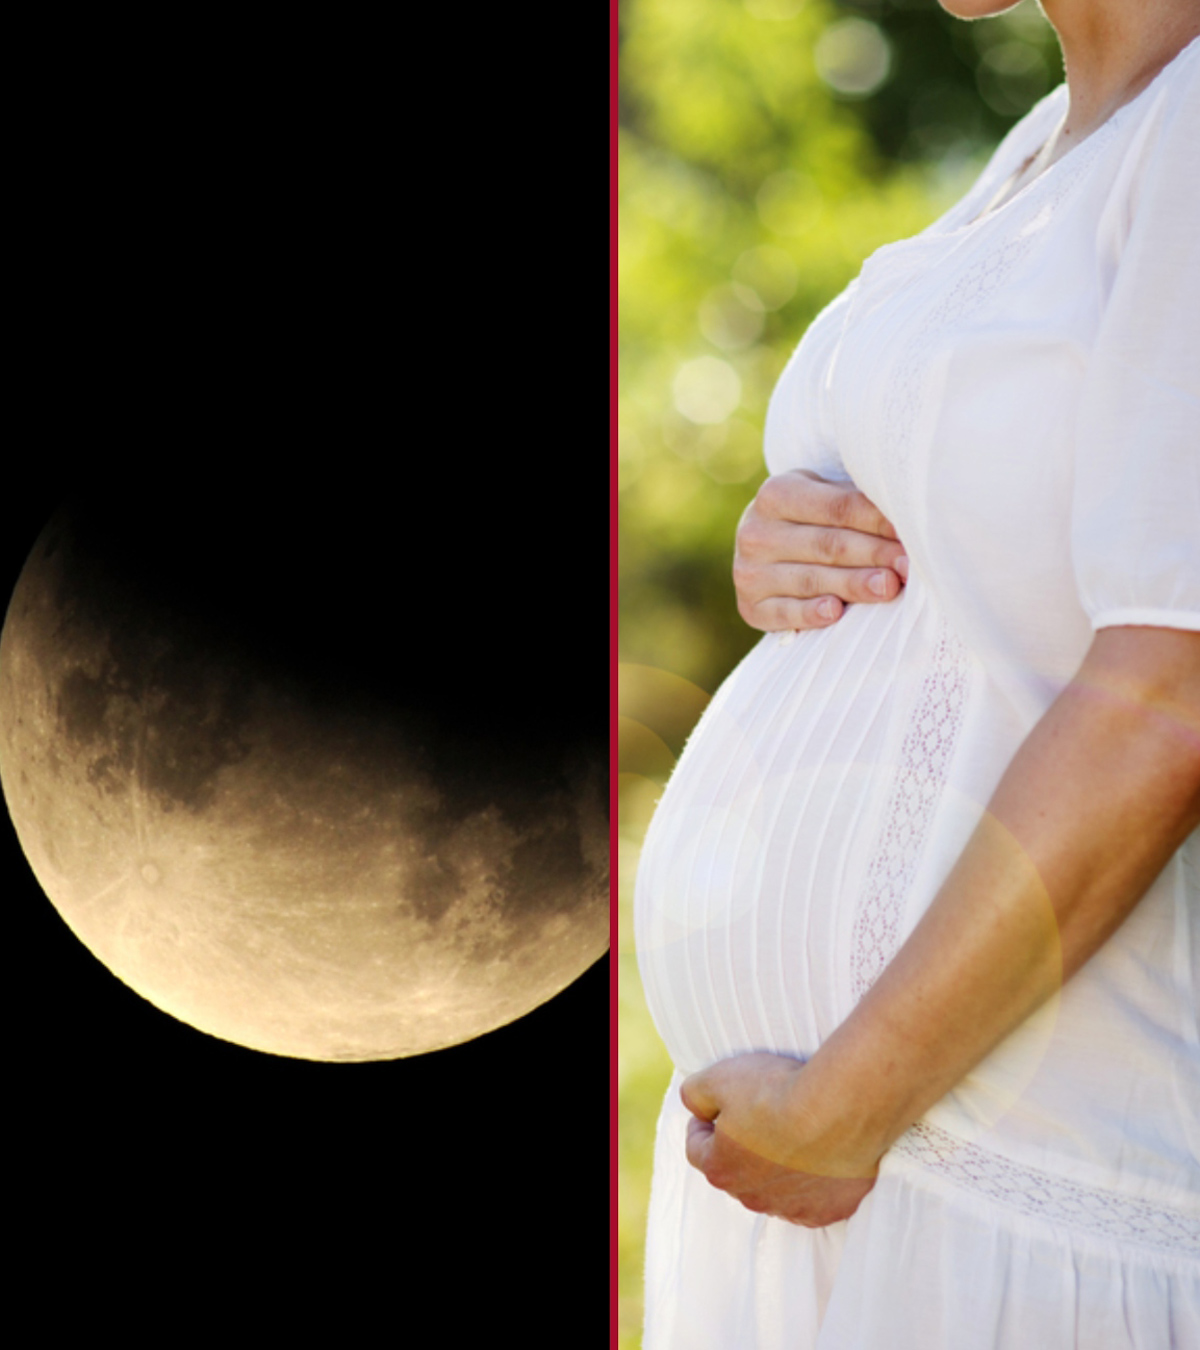 चंद्रग्रहण में गर्भवती महिलाएं रखें ये सावधानियां